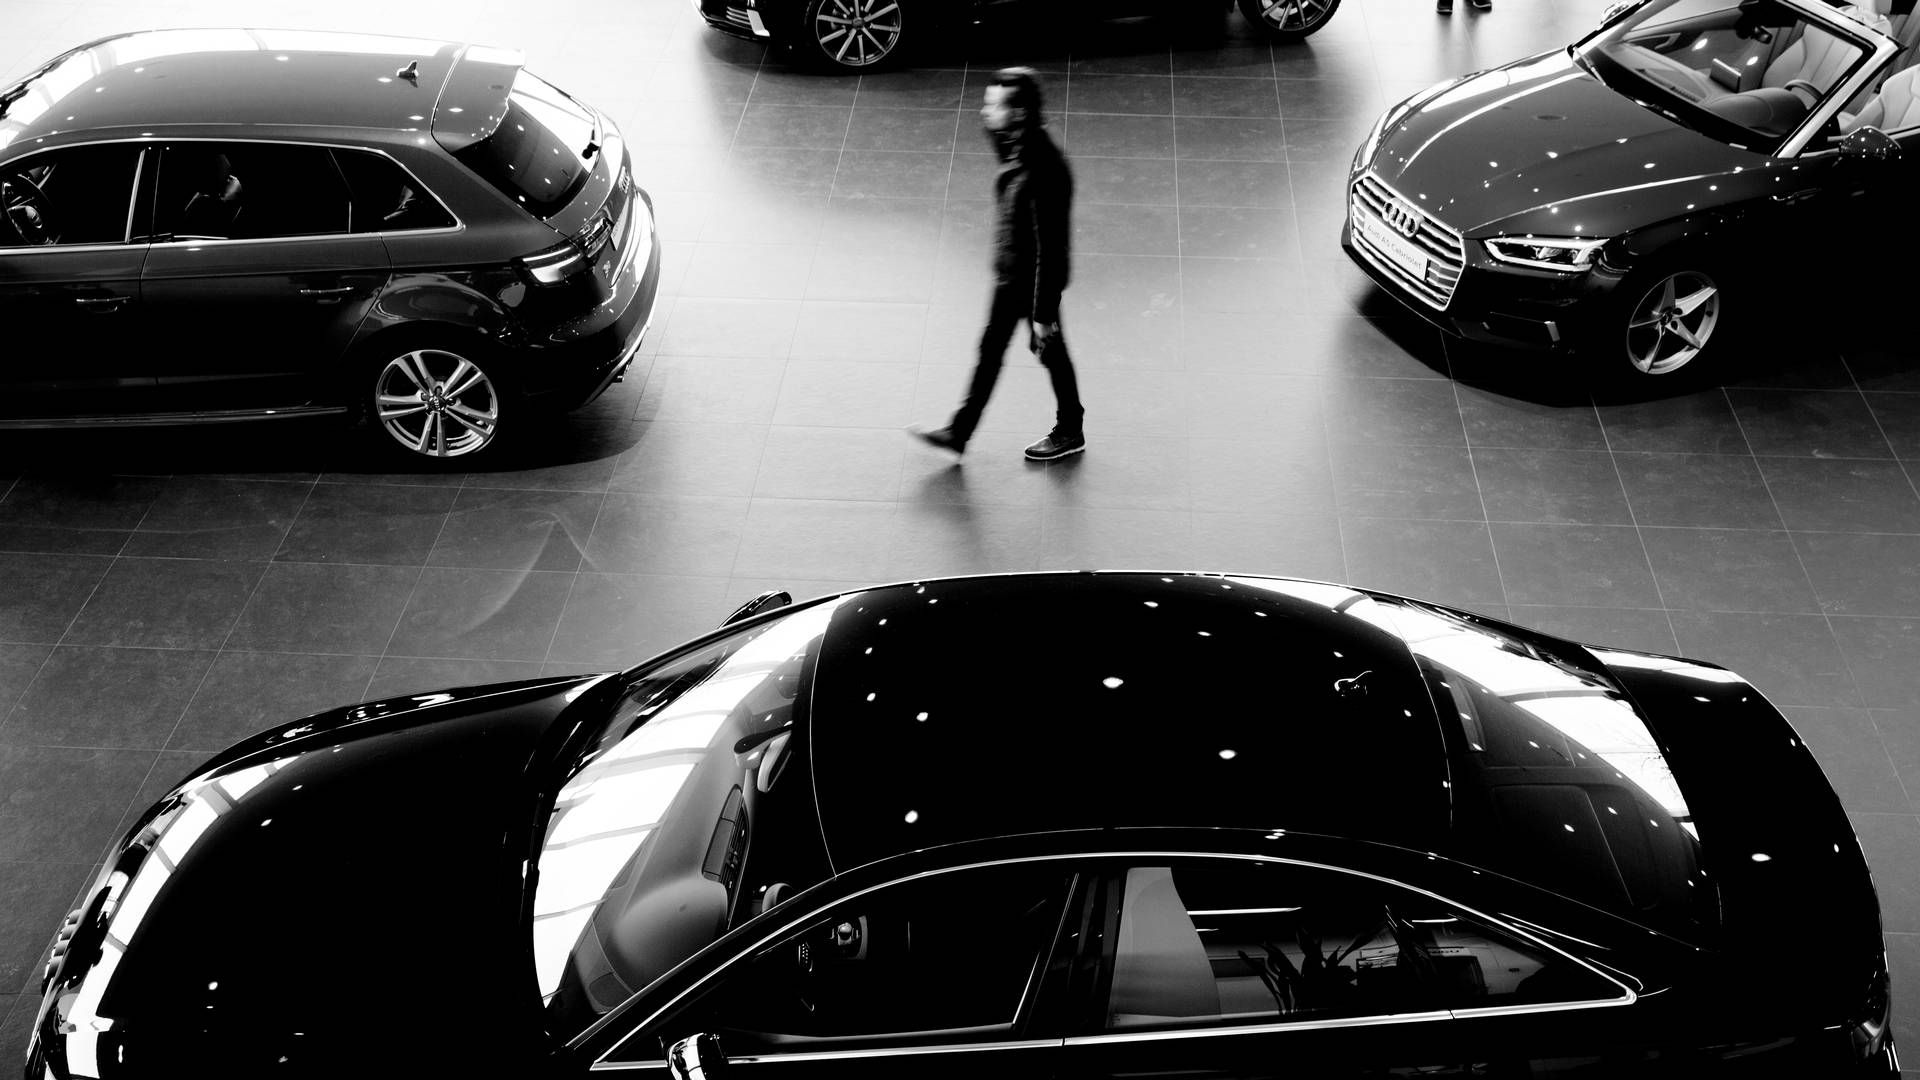 Strømmen skal bruges hos Semler Gruppens detailforretninger indenfor bilhandel i Jylland og på Fyn | Foto: Peter Hove Olesen/Politiken/Ritzau Scanpix